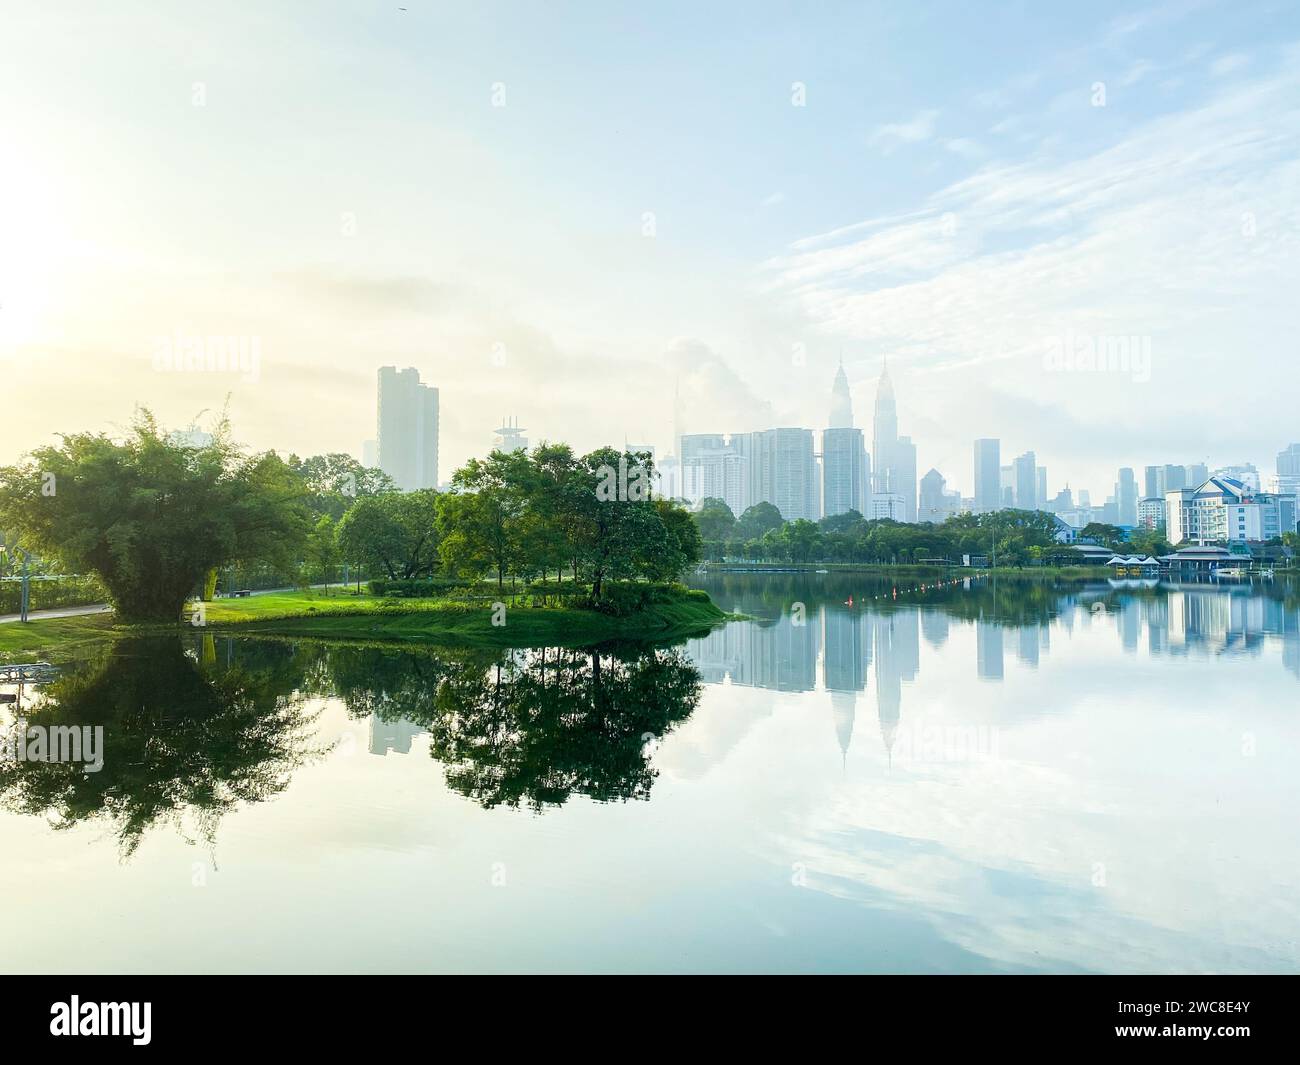 L'architecture et l'aménagement paysager du parc reflètent le riche patrimoine culturel de Kuala Lumpur, offrant aux visiteurs un aperçu de l'histoire de la ville Banque D'Images